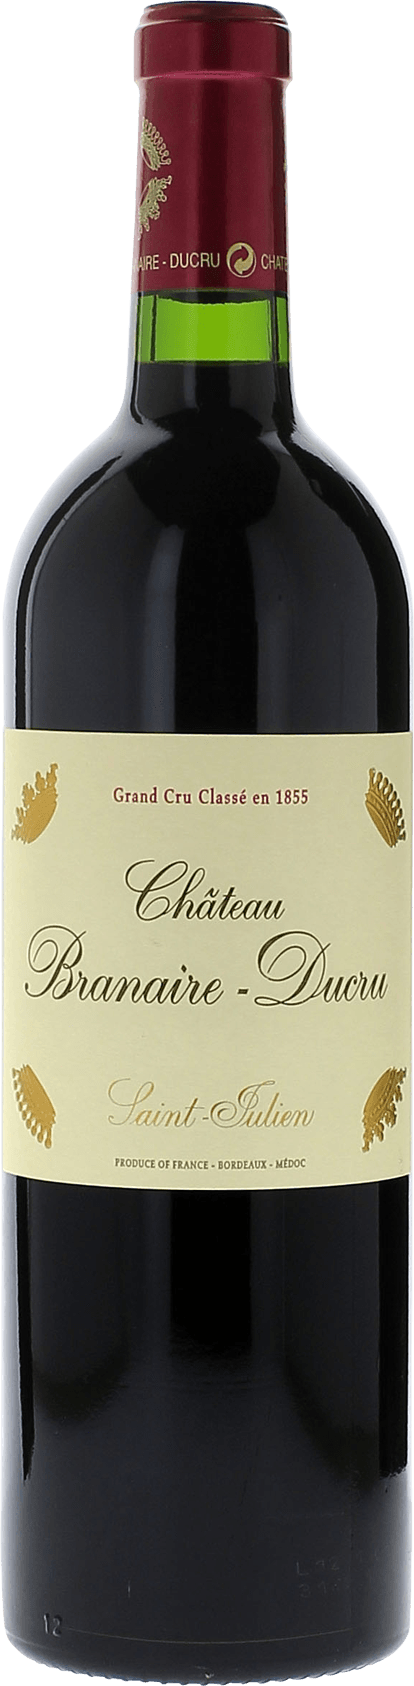 Branaire ducru 1961 4me Grand cru class Saint-Julien, Bordeaux rouge